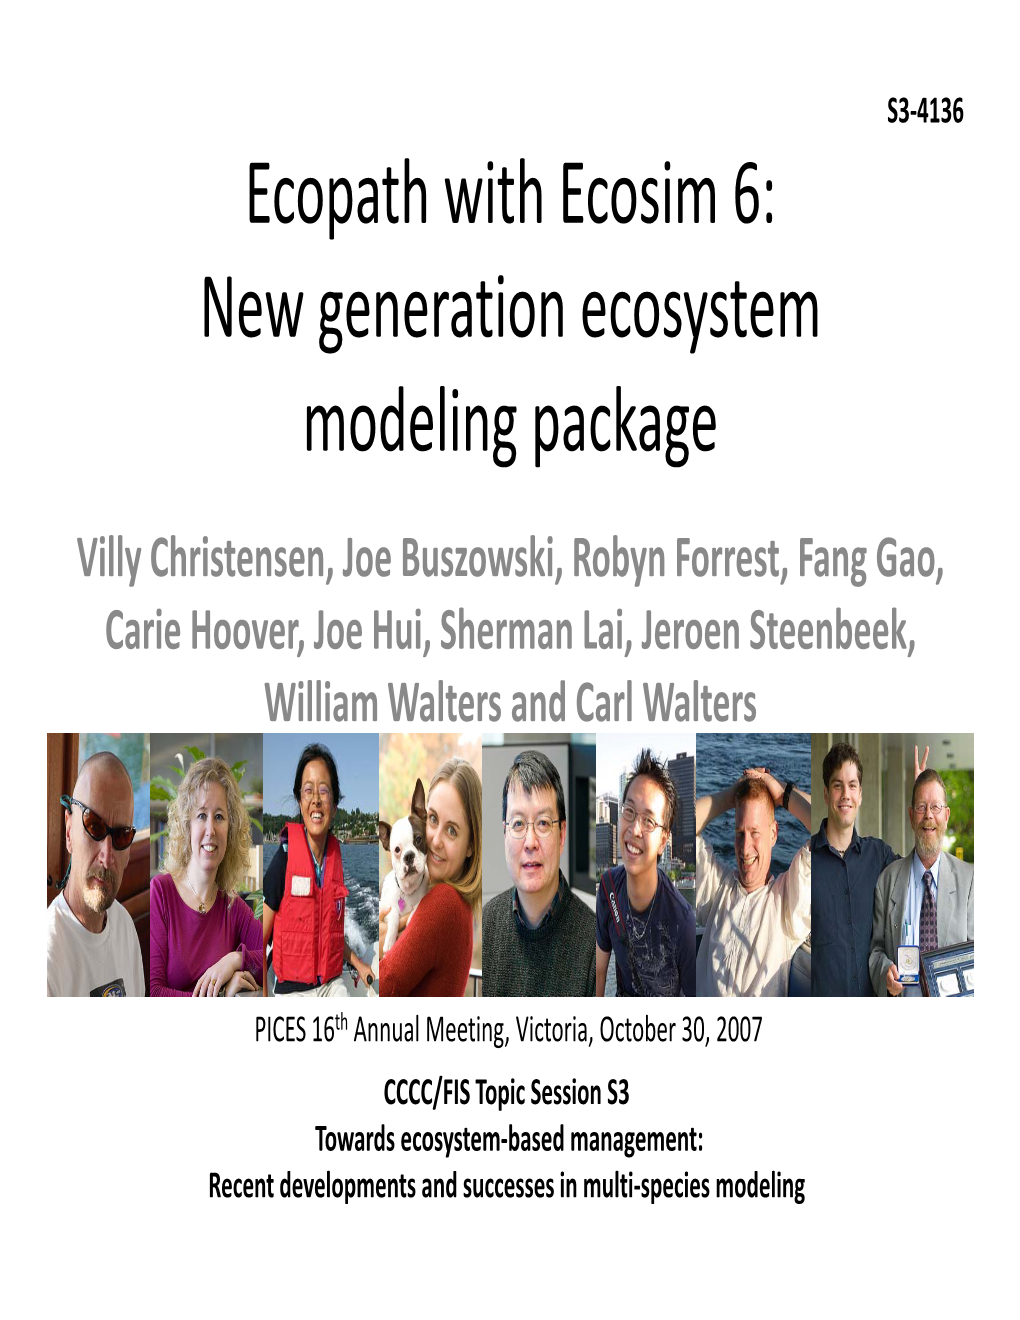 Ecopath with Ecosim 6